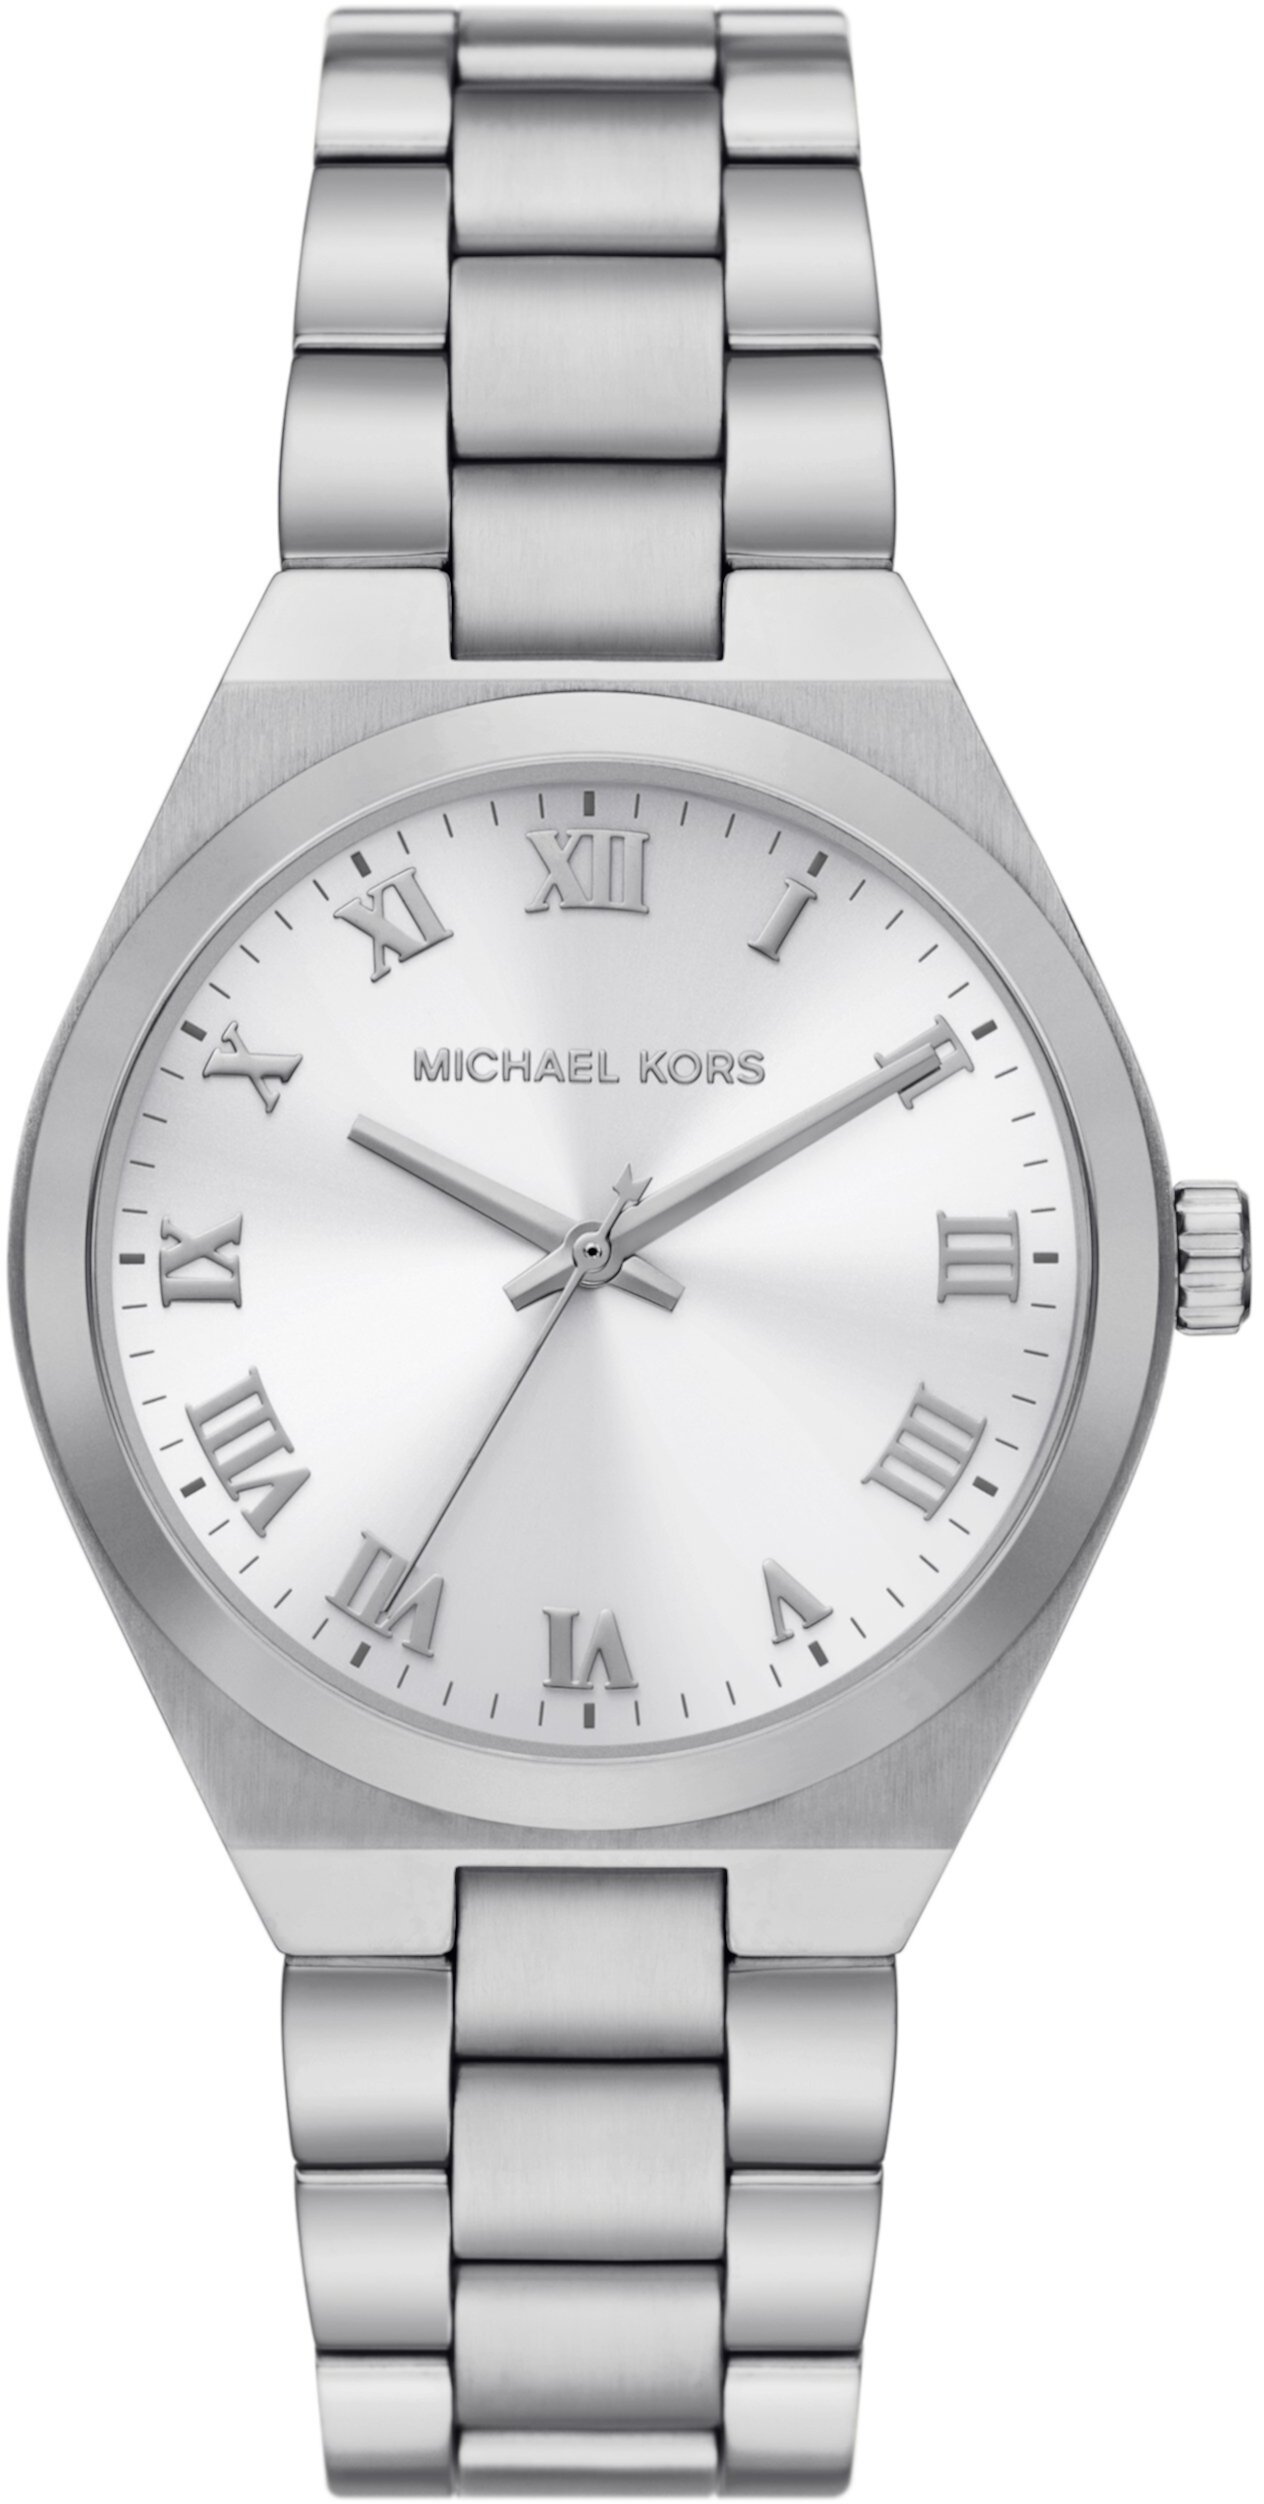 MK7393 - Часы Lennox с тремя стрелками из нержавеющей стали Michael Kors